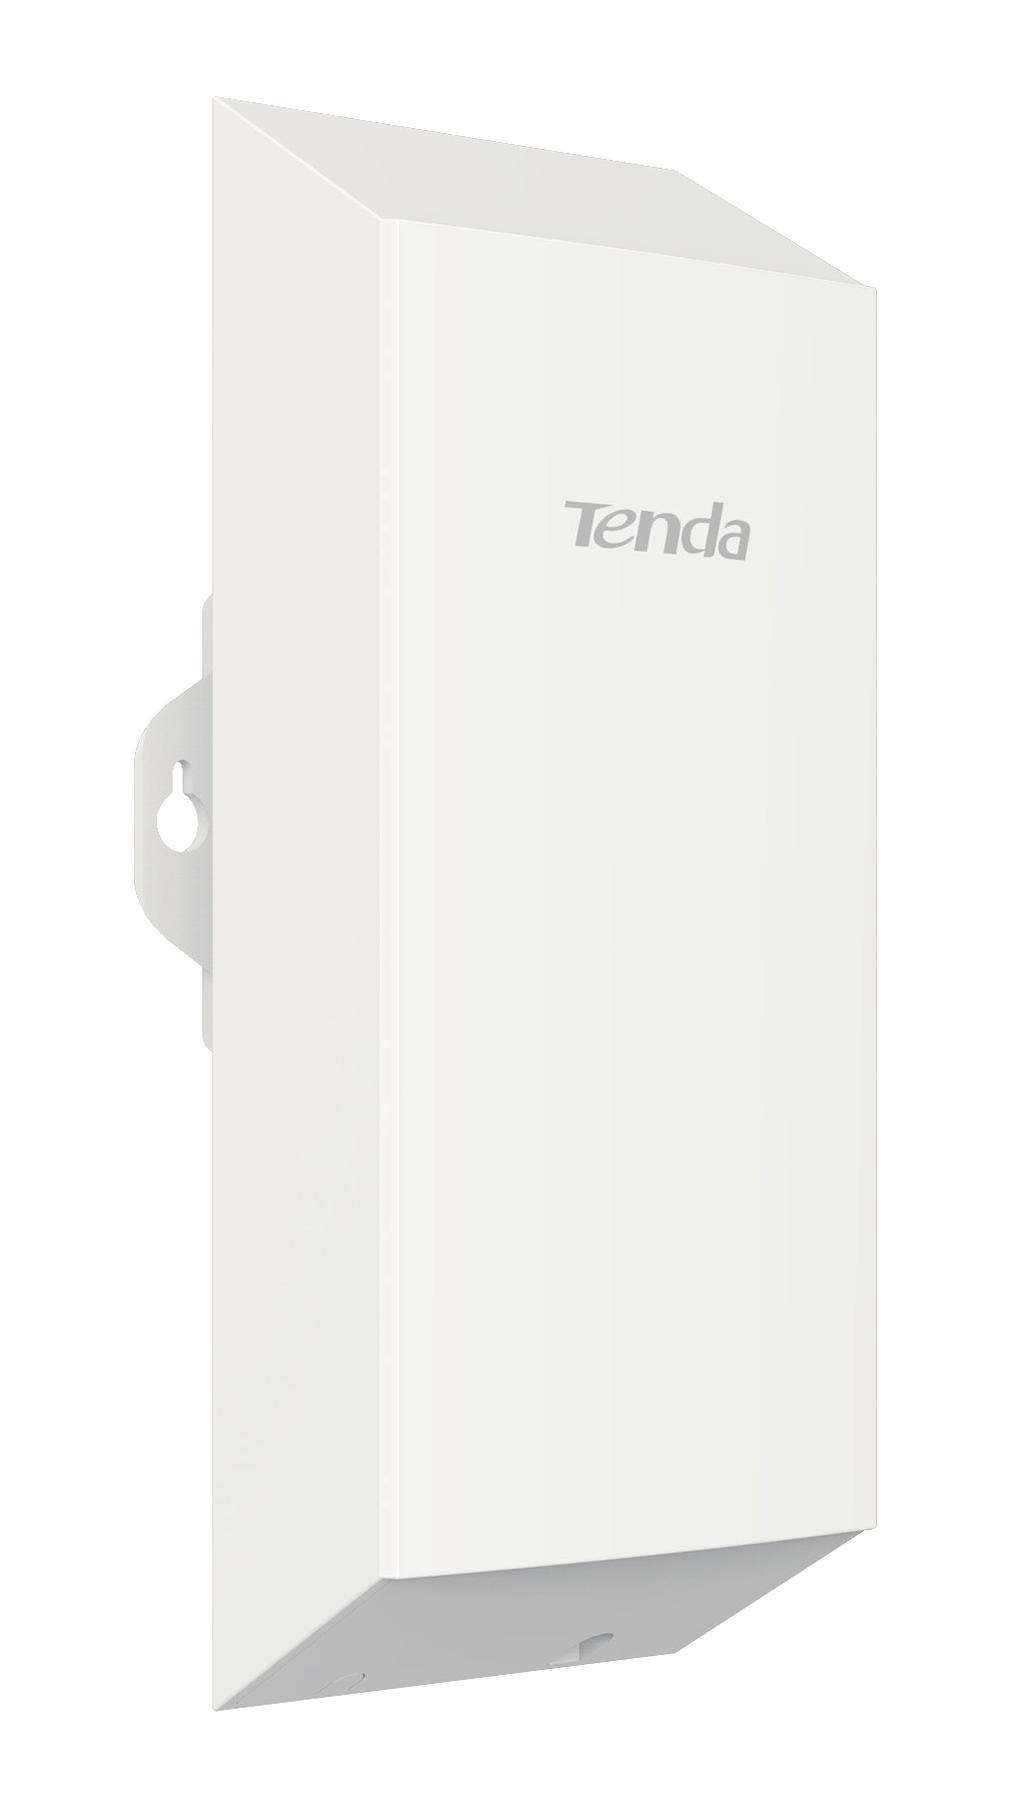 Der Tenda ist ein 2,4 GHz Outdoor CPE und wurde als WISP CPE Lösung für Video sowie Datenübertragungen über weite WLAN Distanzen entworfen.